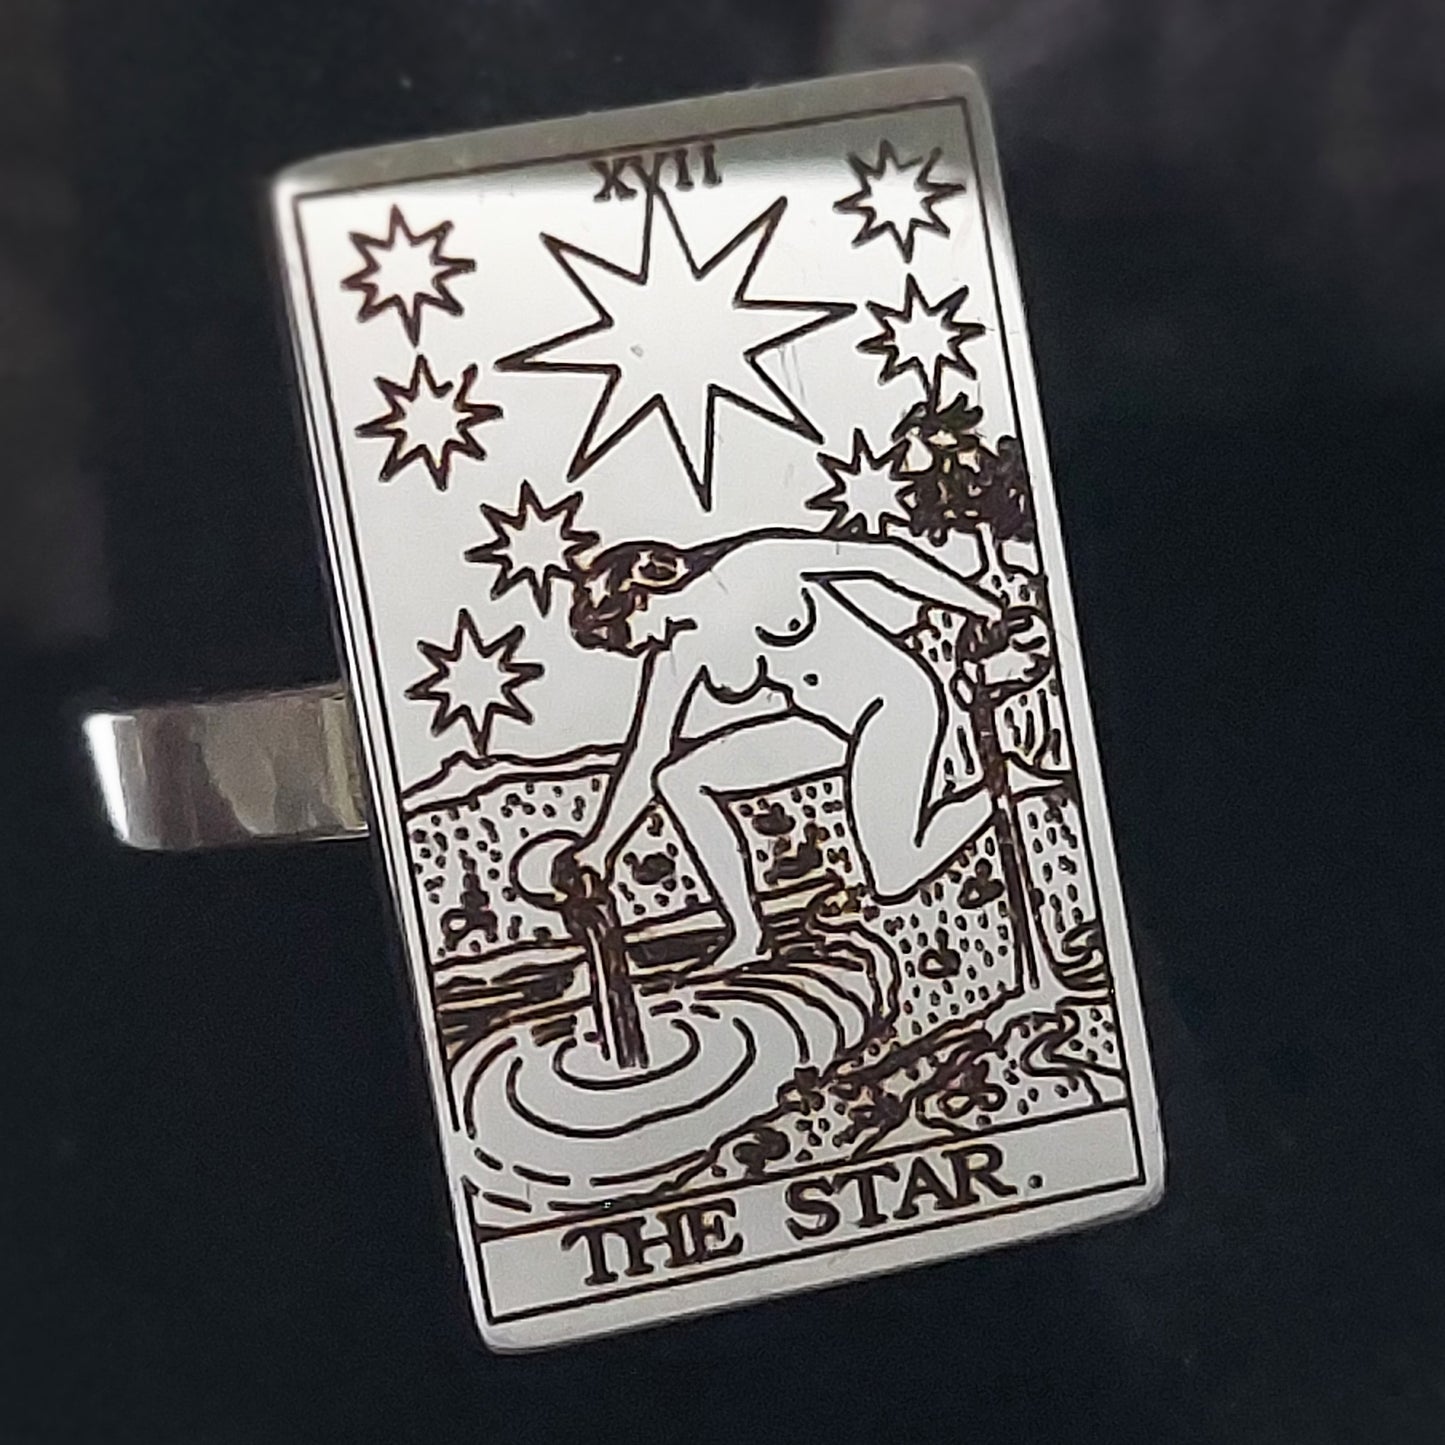 The Star Tarot Card Ring